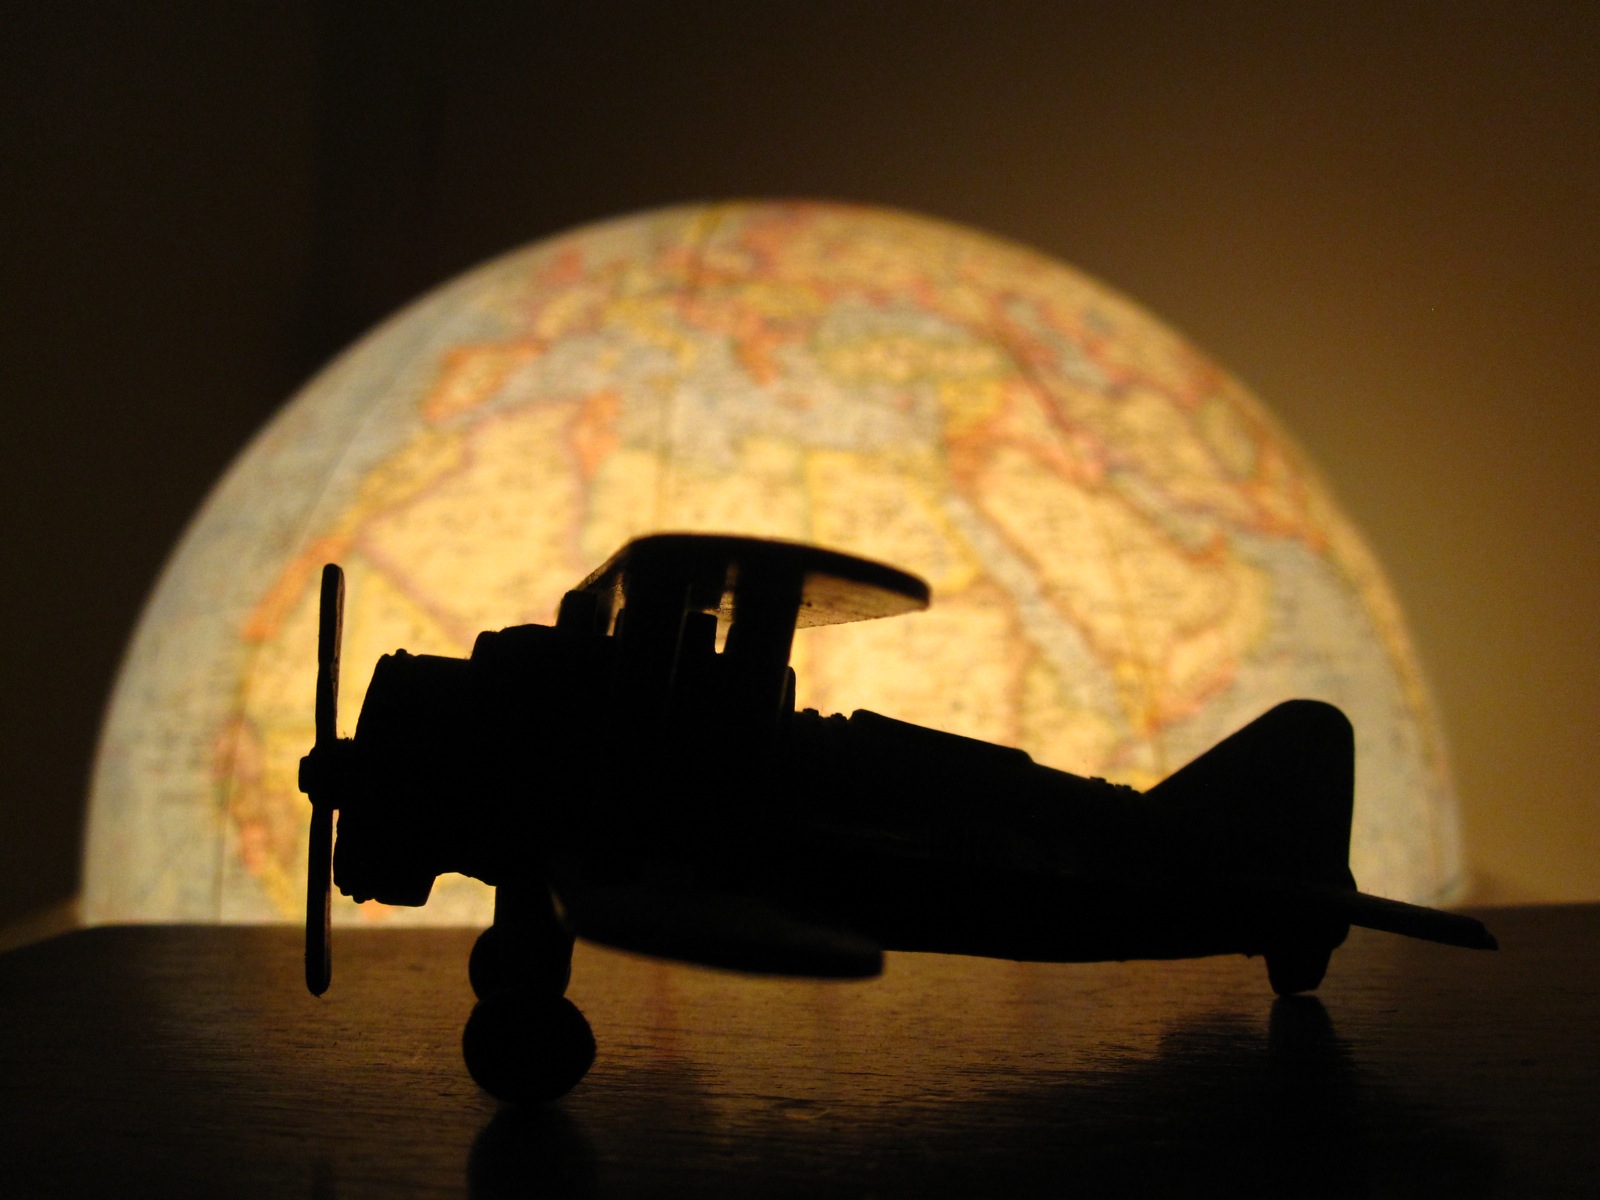 Un avión de juguete se sienta sobre una mesa en la oscuridad. Detrás de él hay un globo resplandeciente.